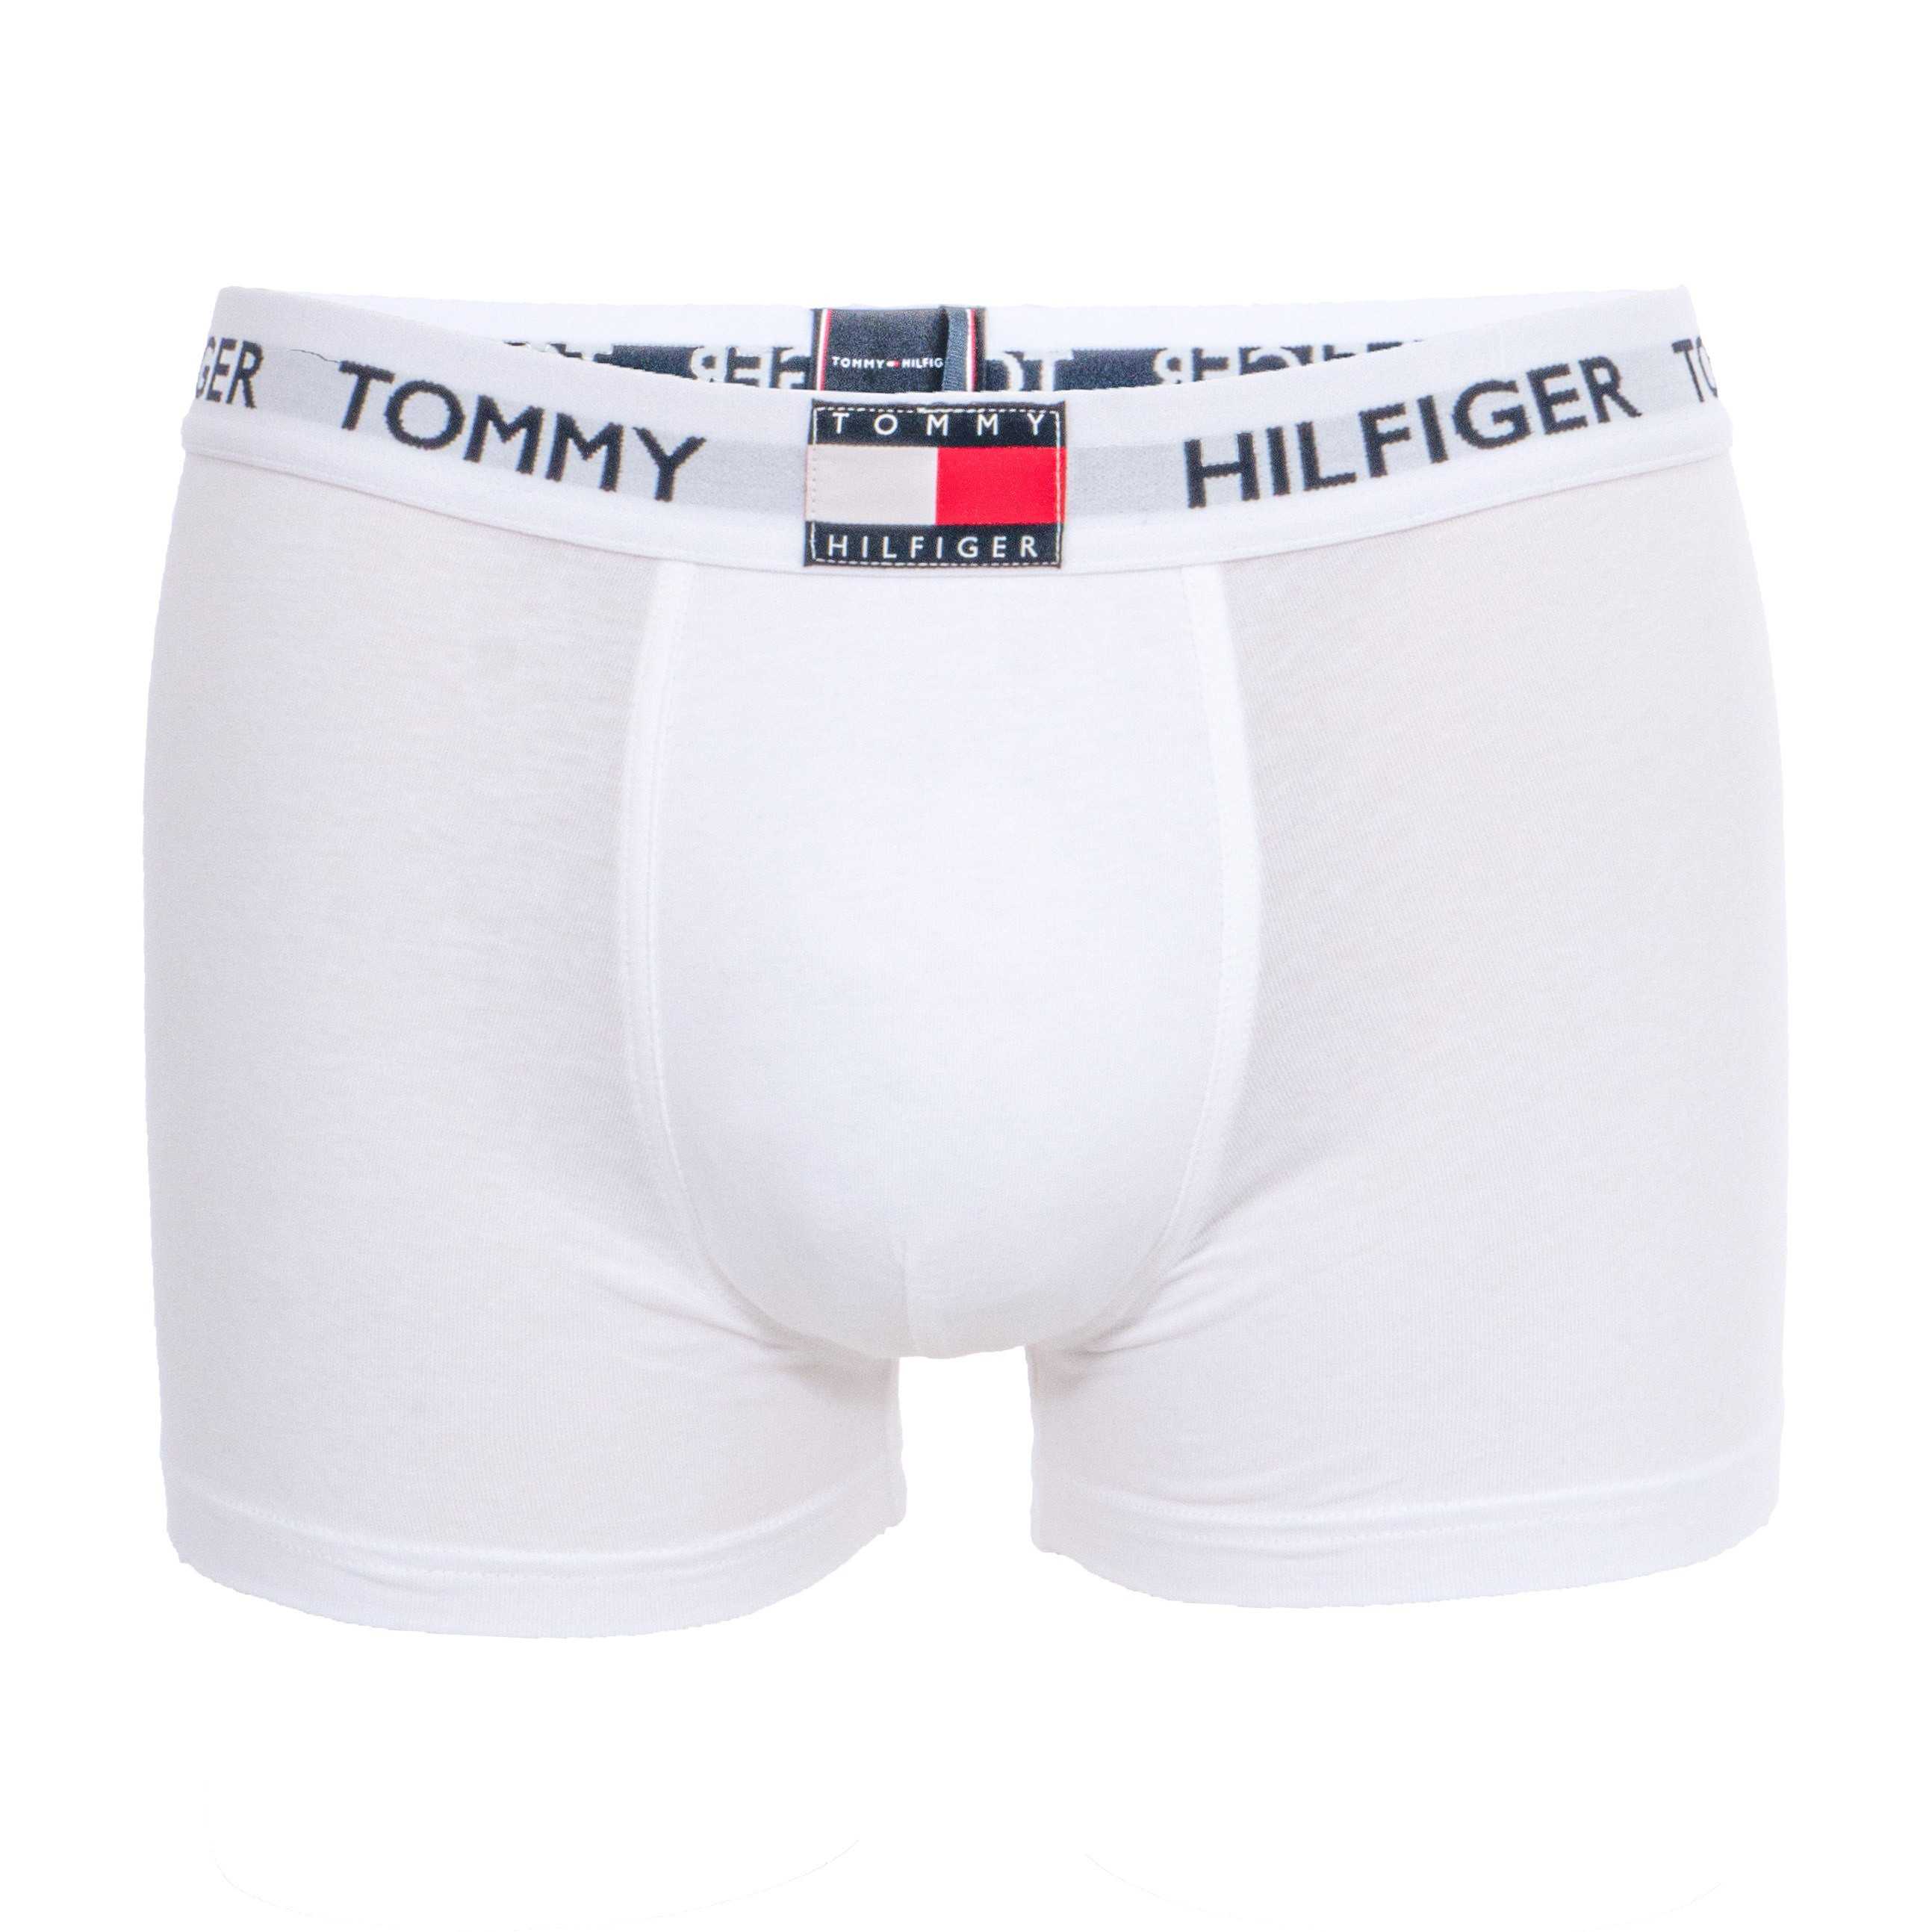 Boxer trunk algodón organico Tommy Hilfiger TALLAS: s, m, l, xl; COLOR: blanco, negro  - HOMBRE  - PEPI GUERRA